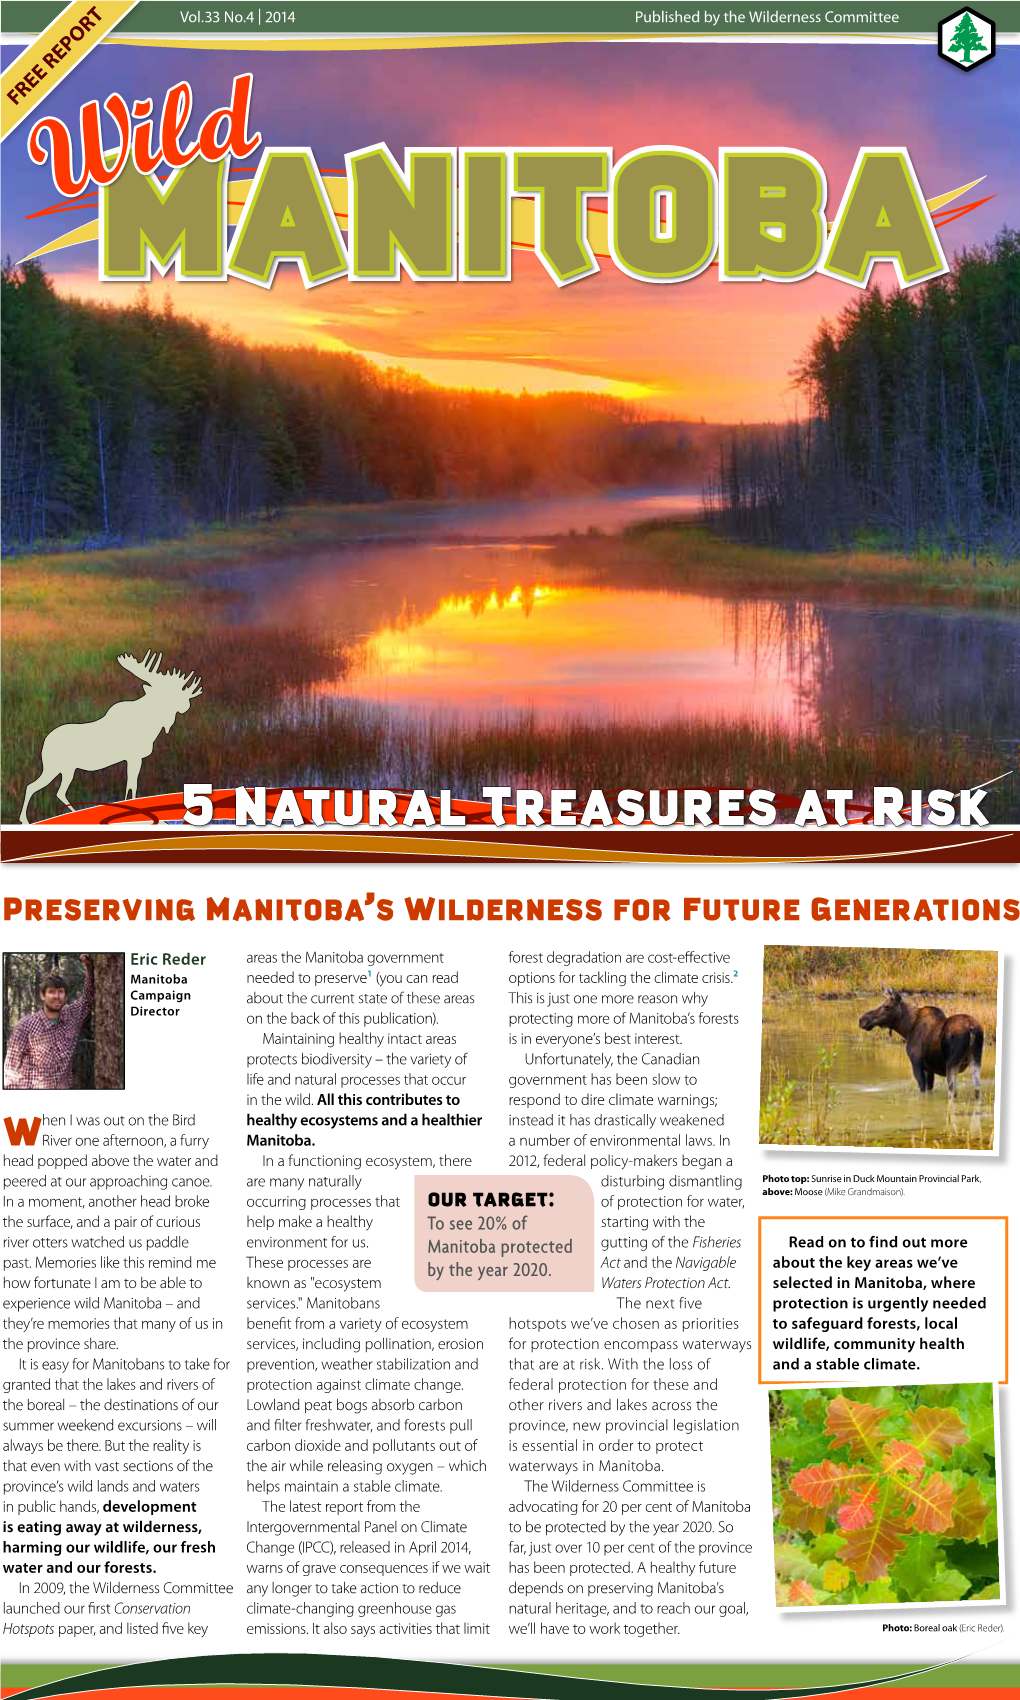 Wild Manitoba: 5 Natural Treasures at Risk